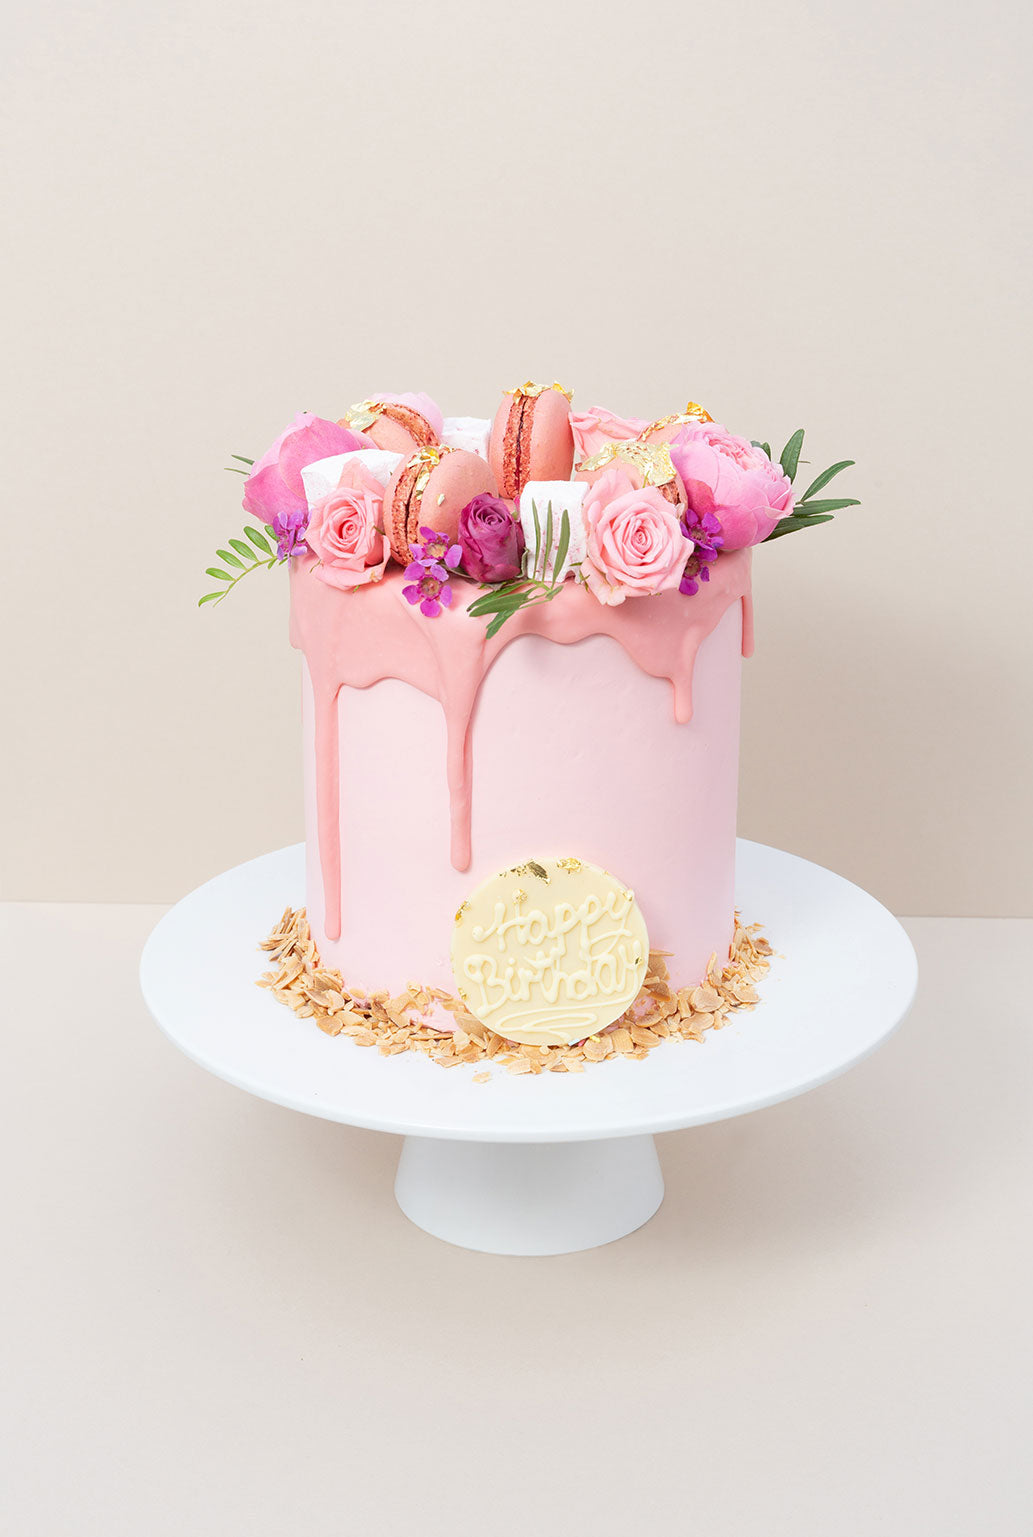 Pink Birthday Cake Images - Free Download on Freepik